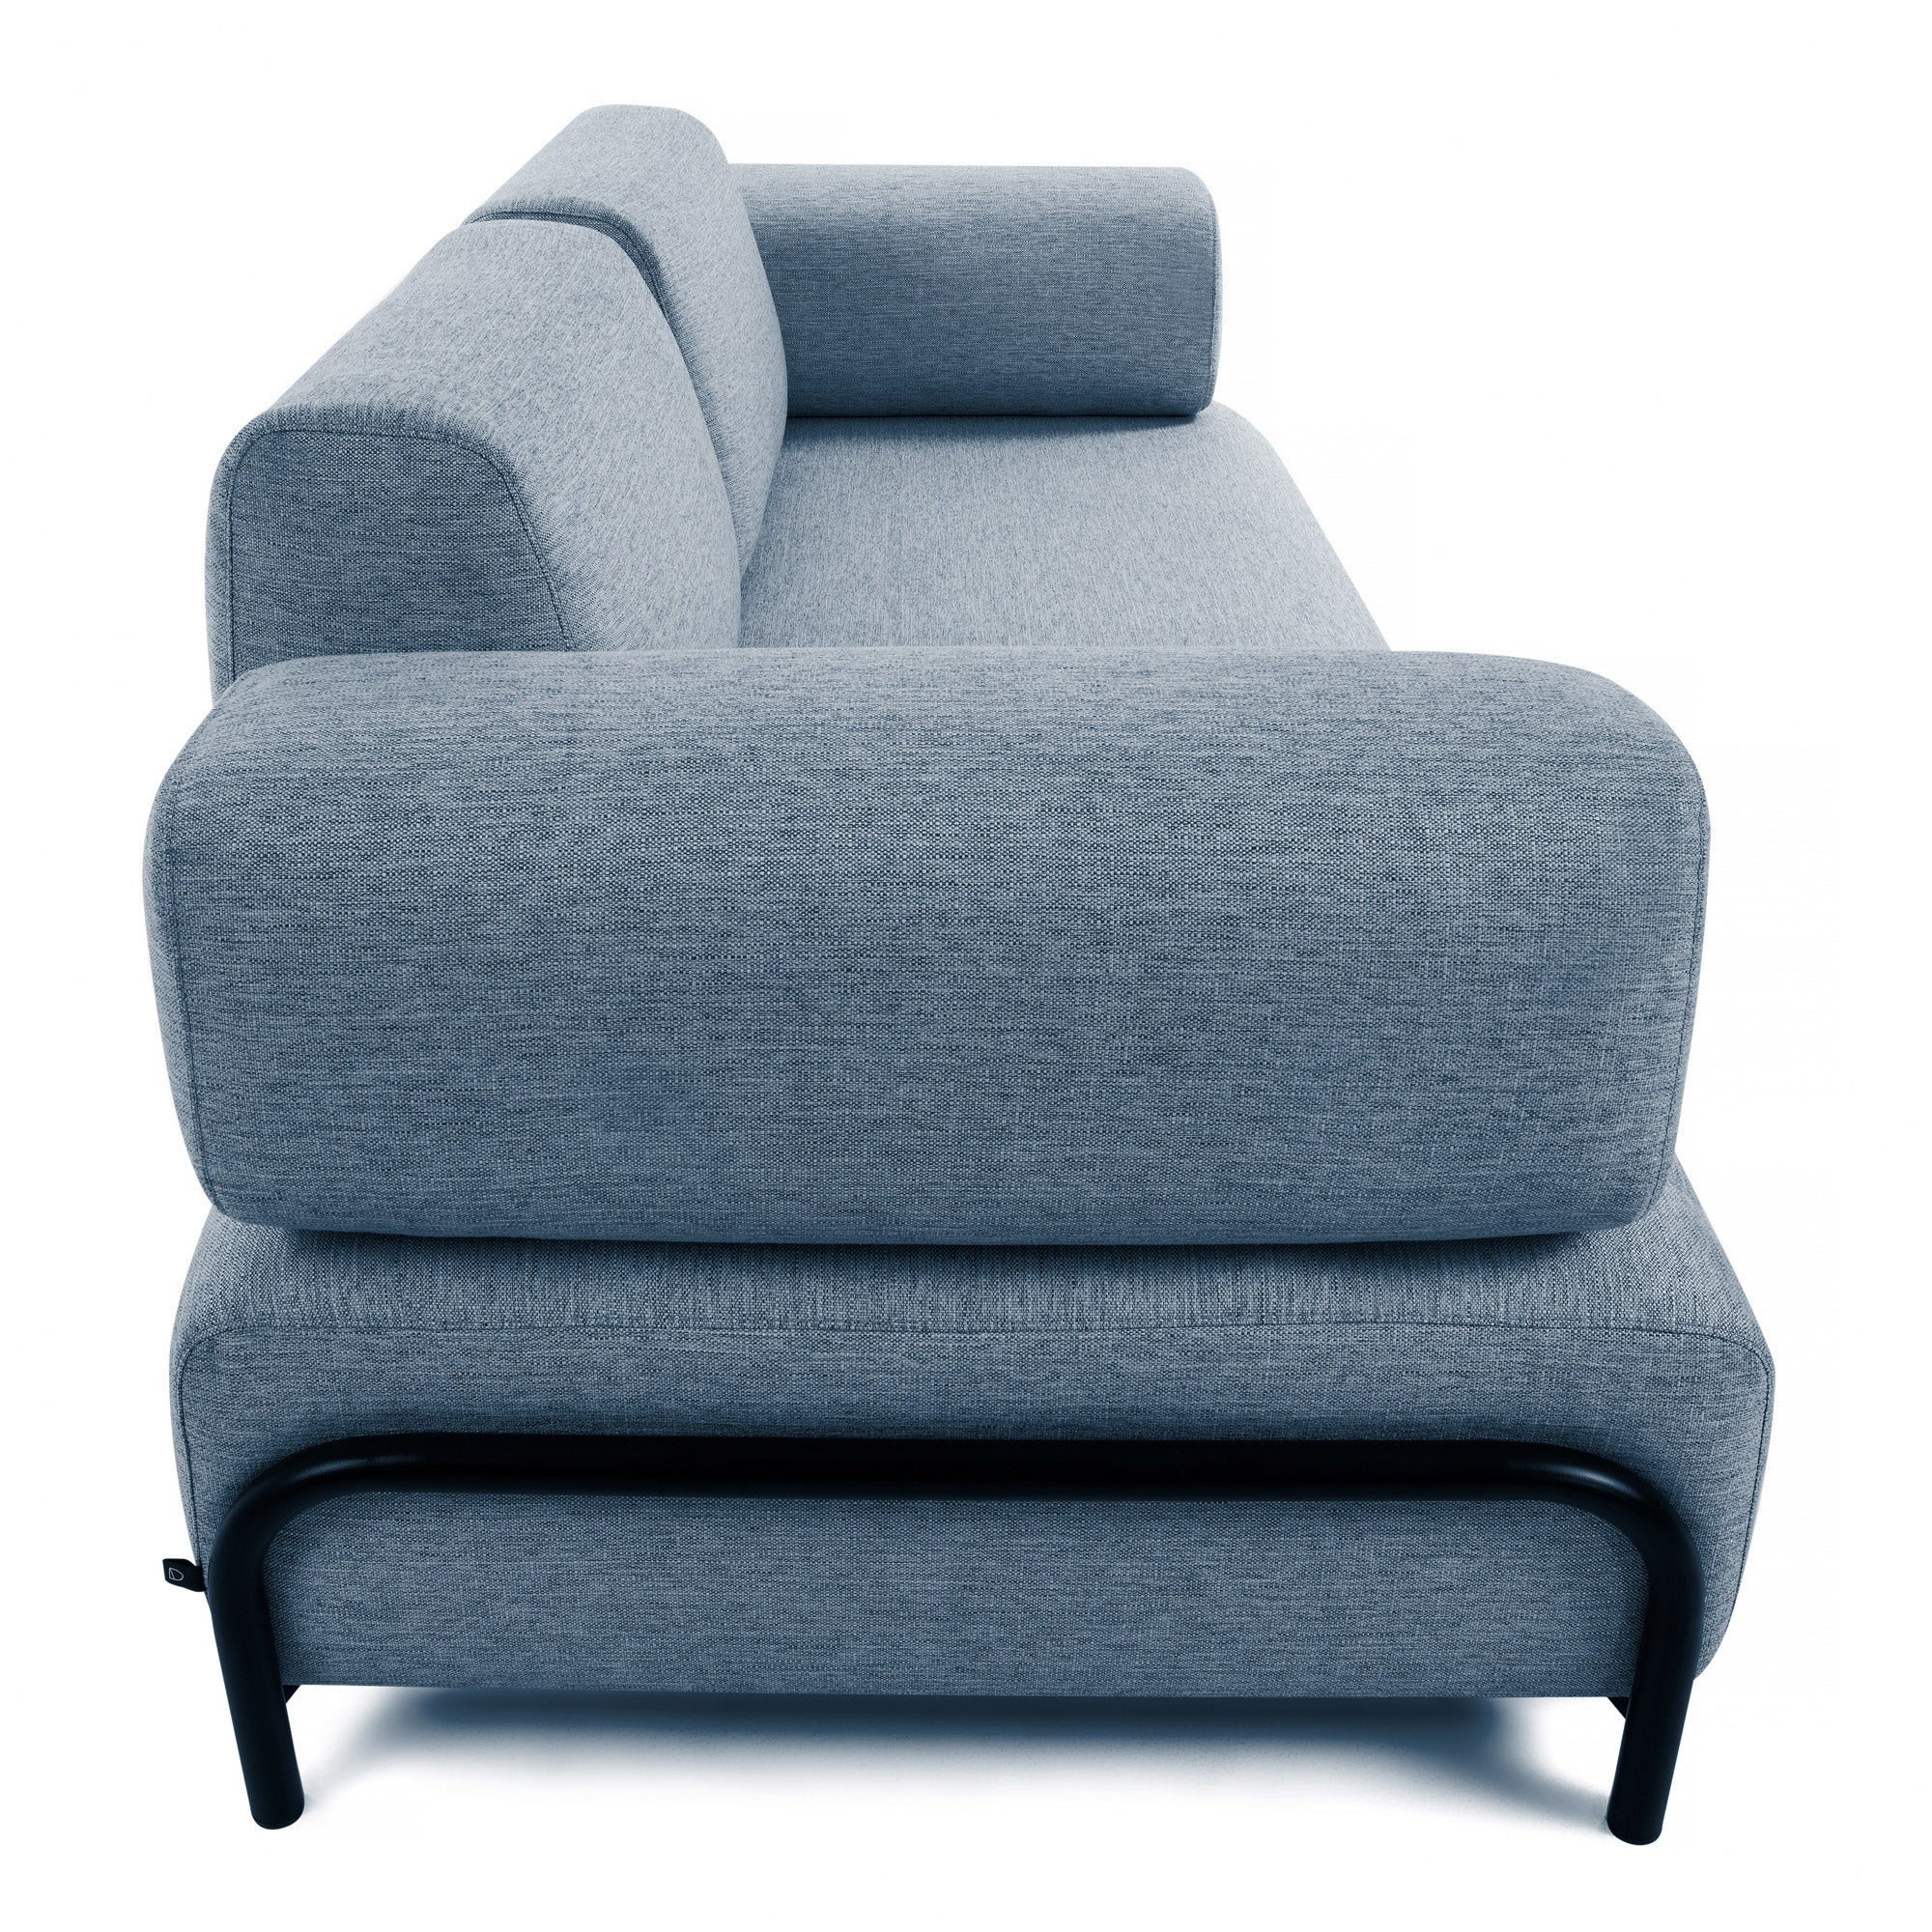 Compo 3 seater sofa in blue, 232 cm